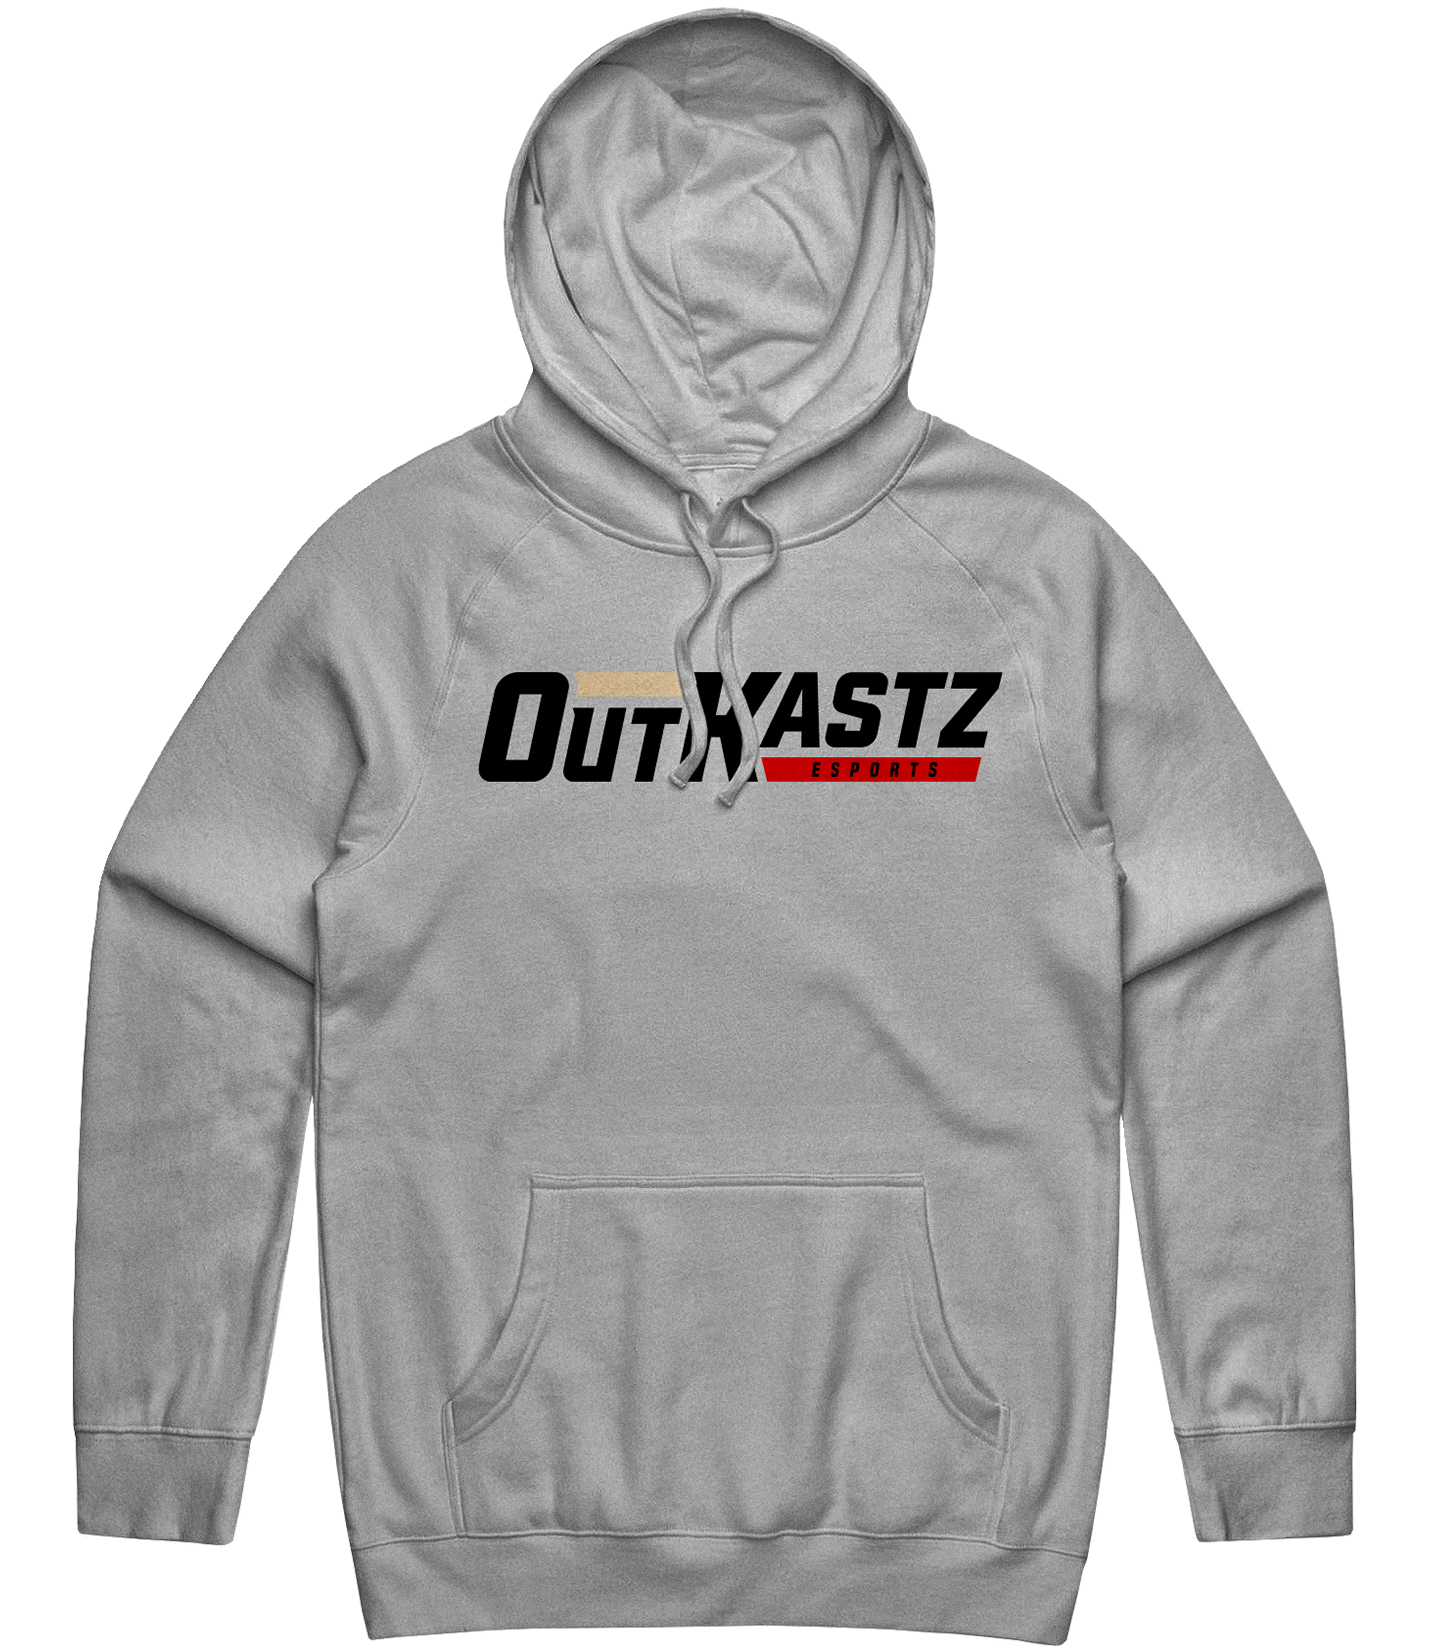 Outkastz Text Hoodie - Grey - Custom Esports Jersey by ARMA